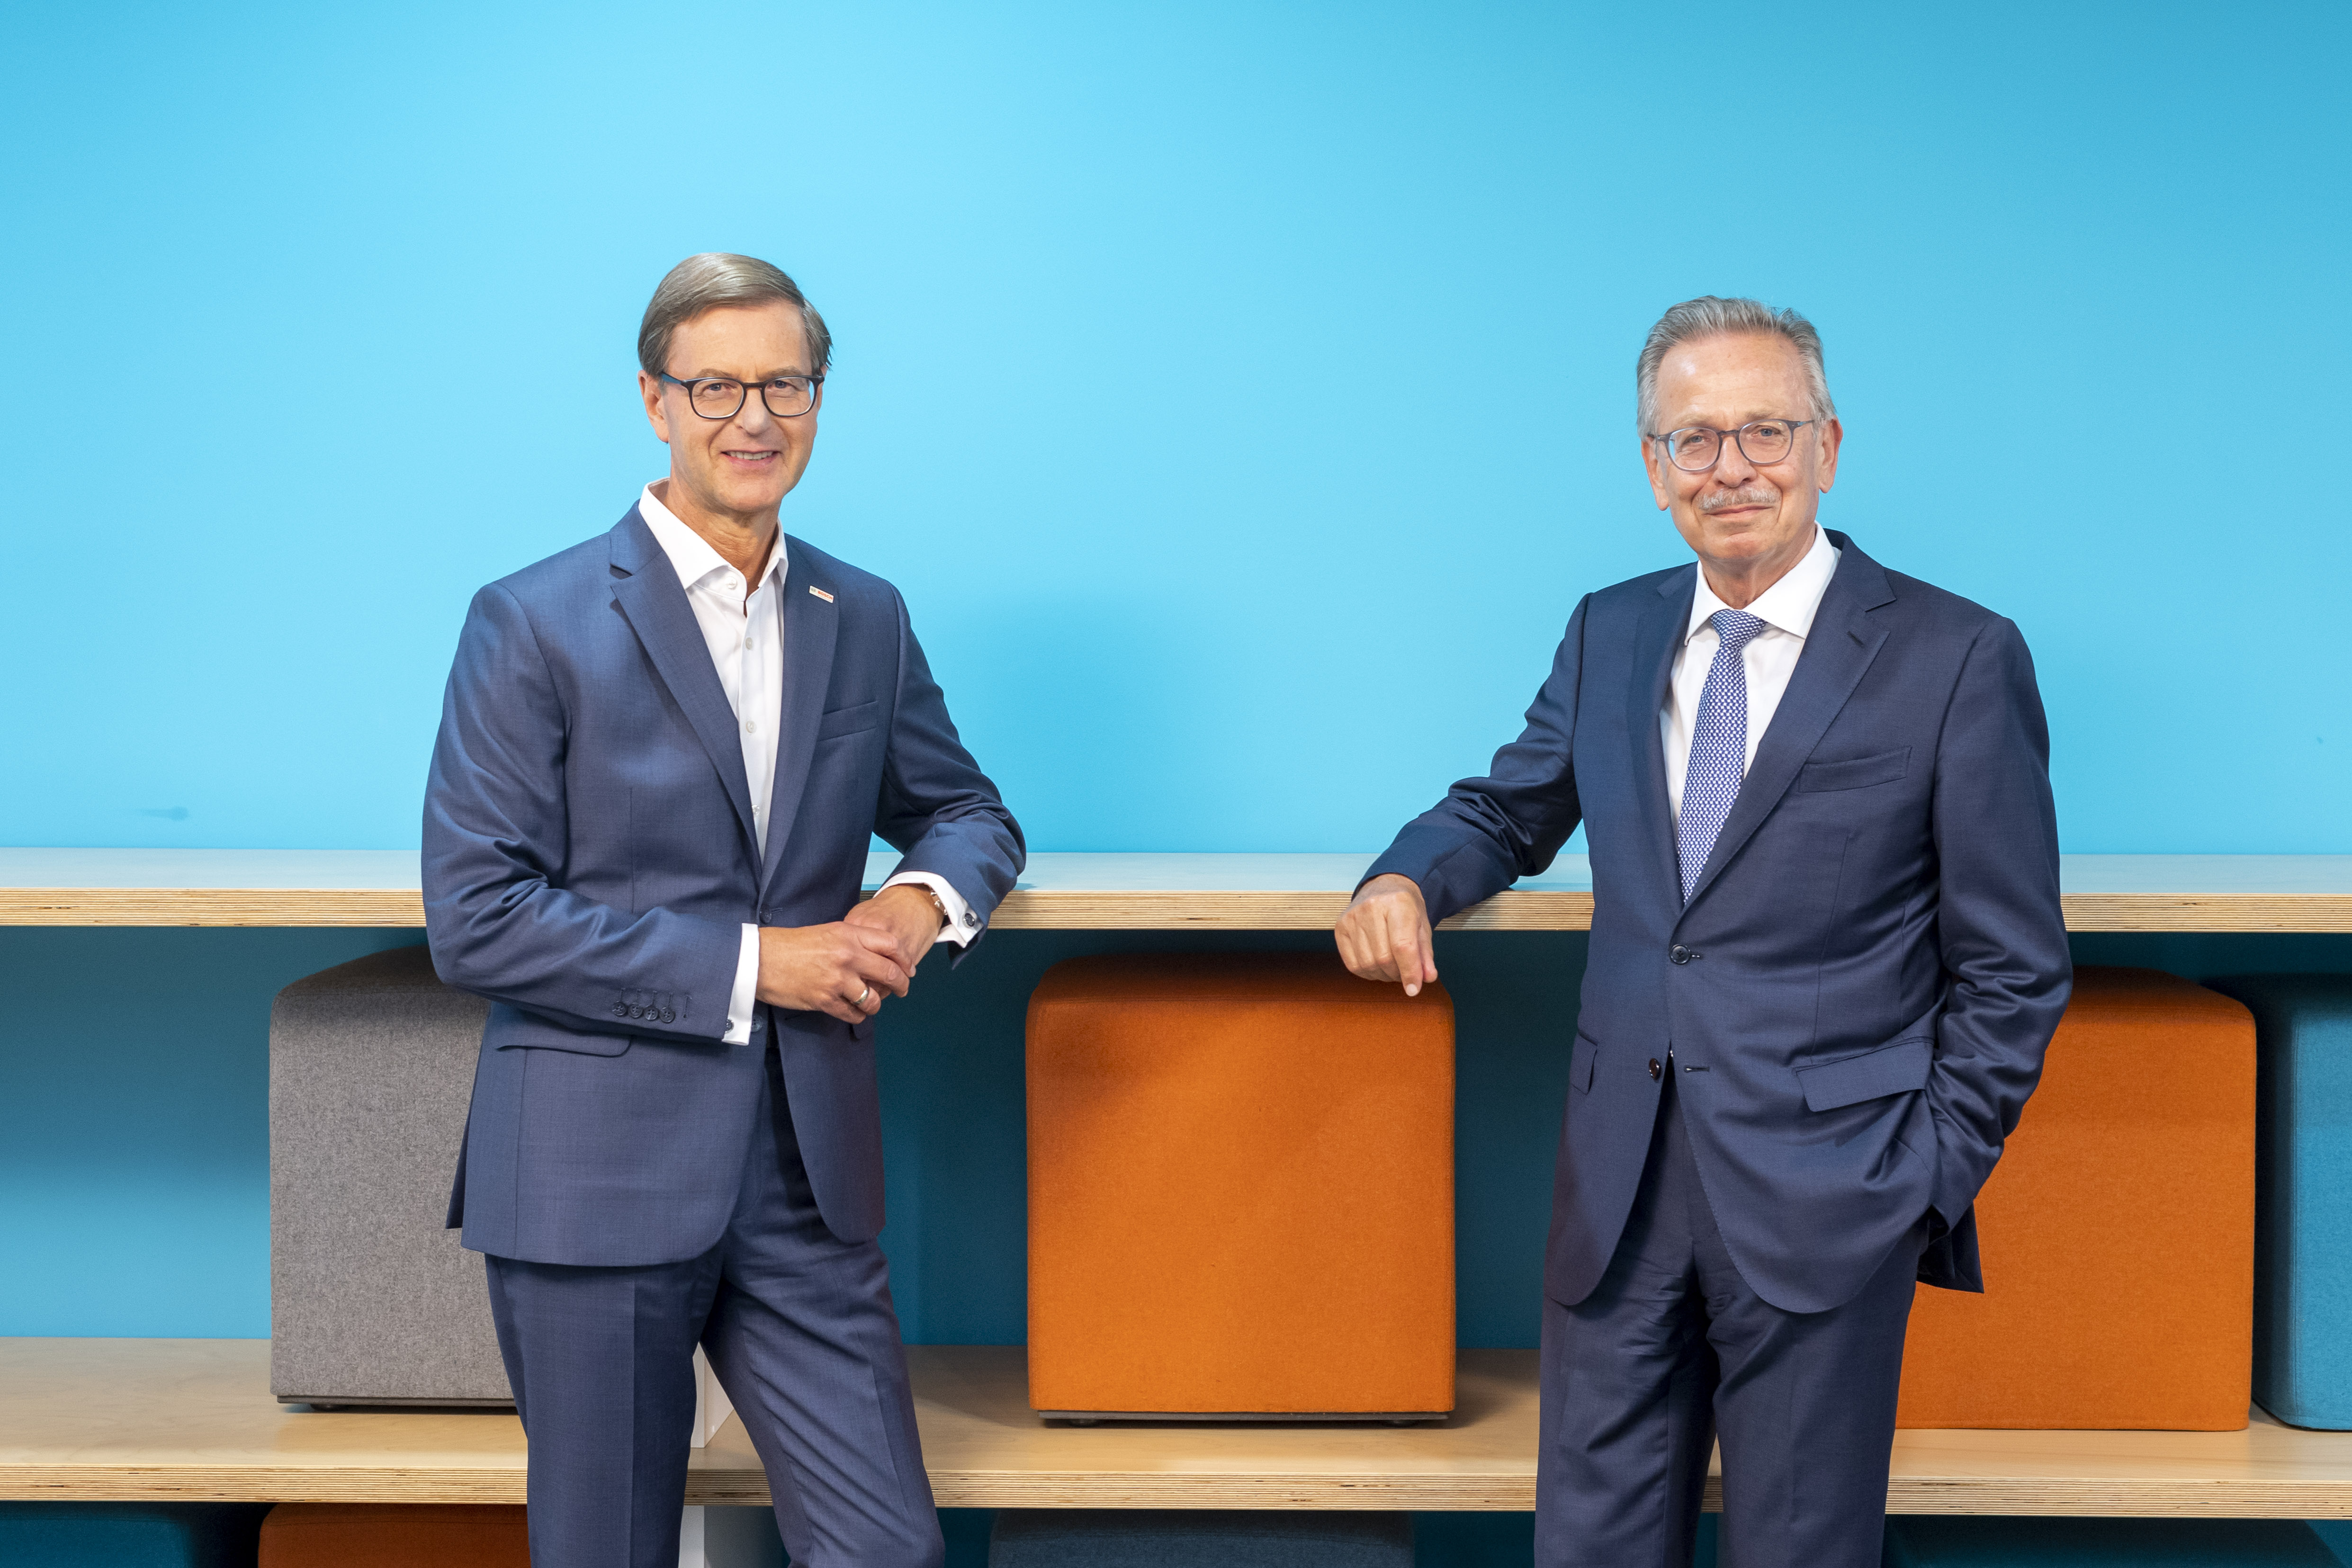 Personálne zmeny v spoločnostiach Robert Bosch GmbH a Robert Bosch Industrietreuhand KG